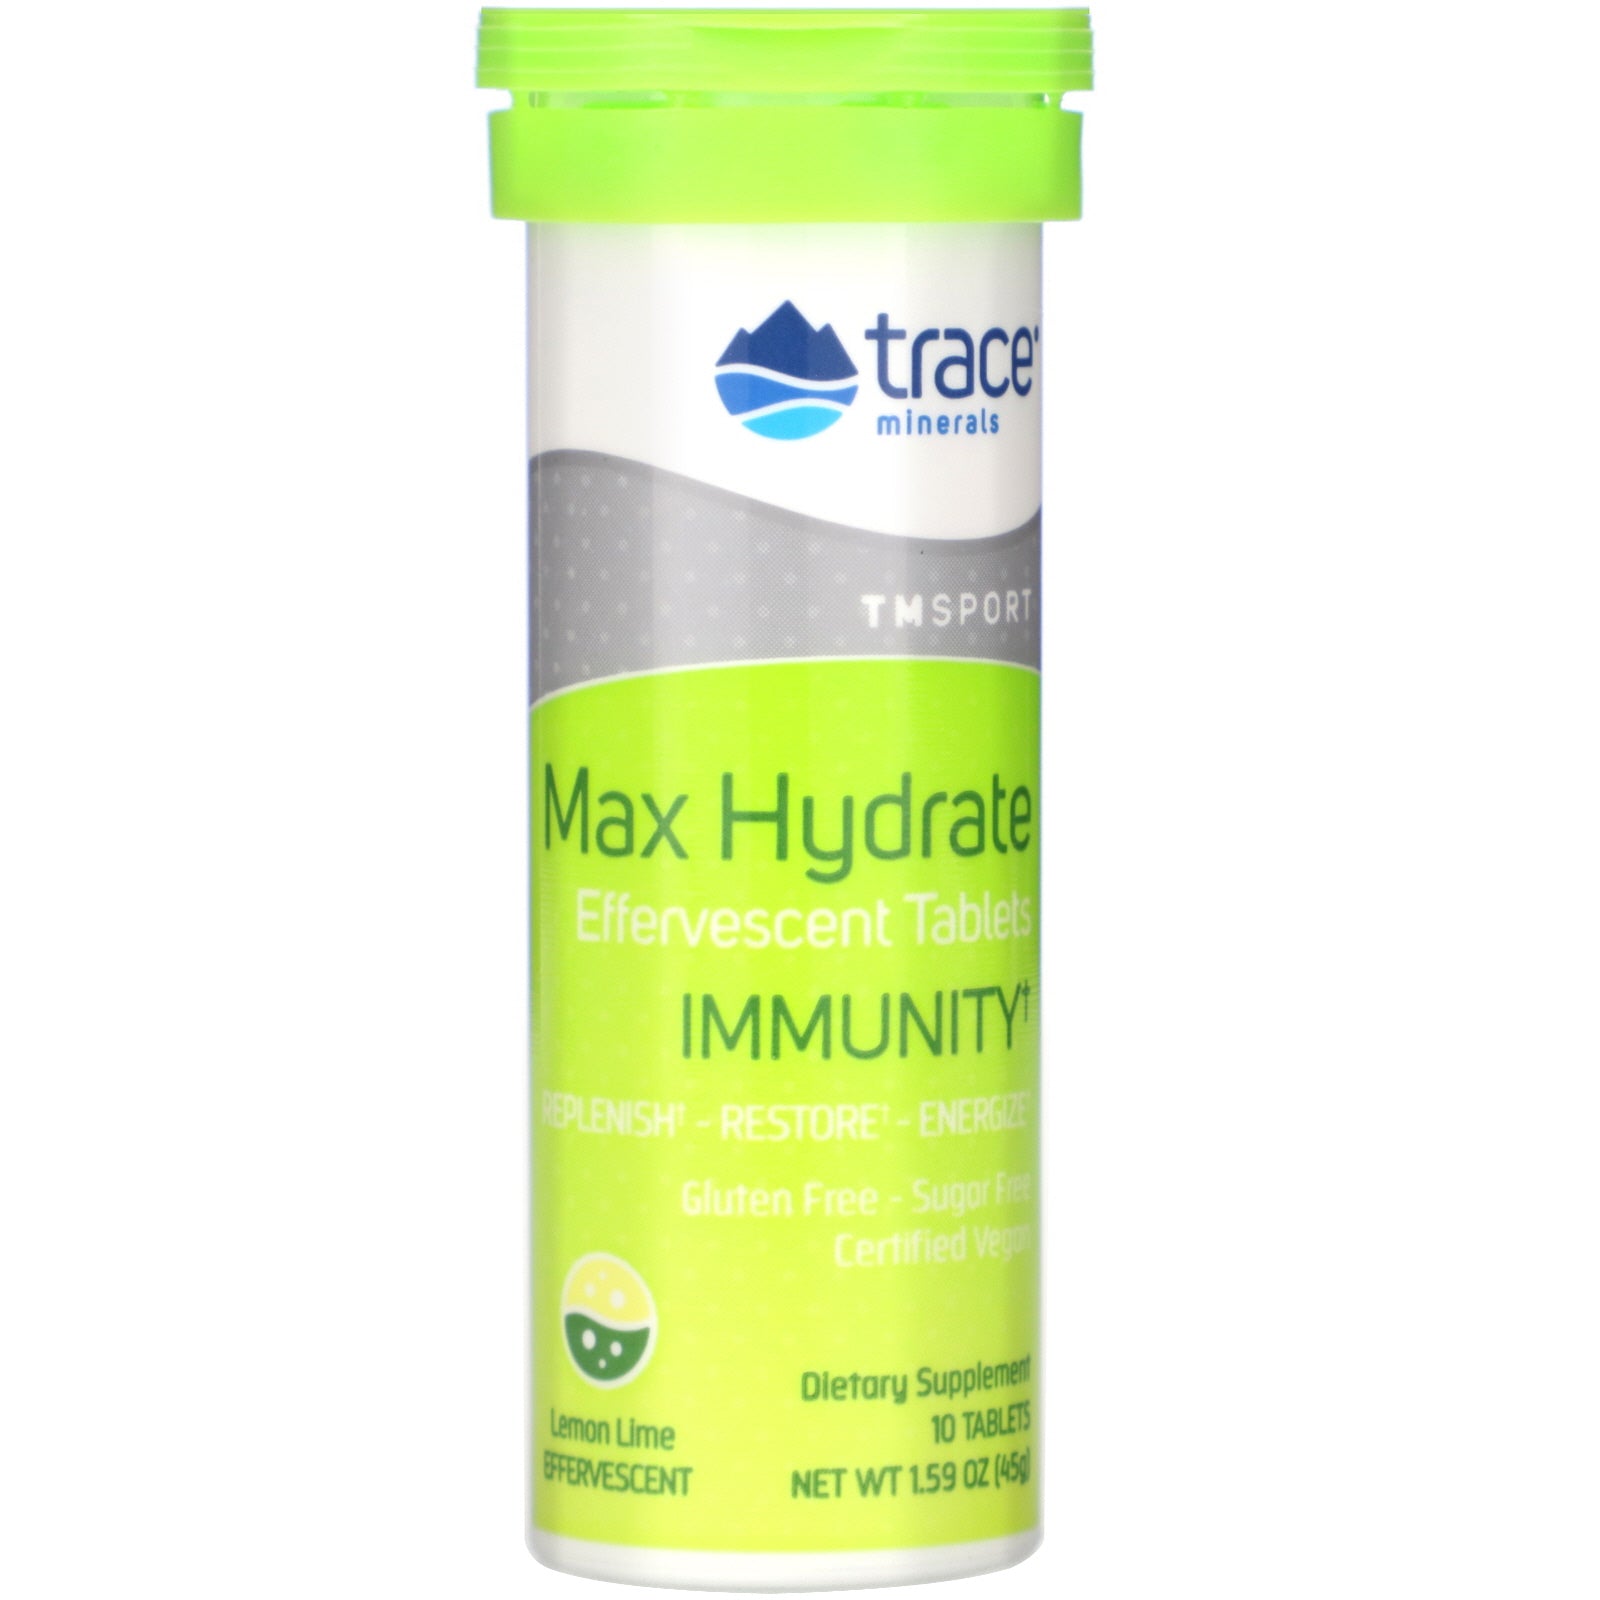 Maxhydrate-Immunität